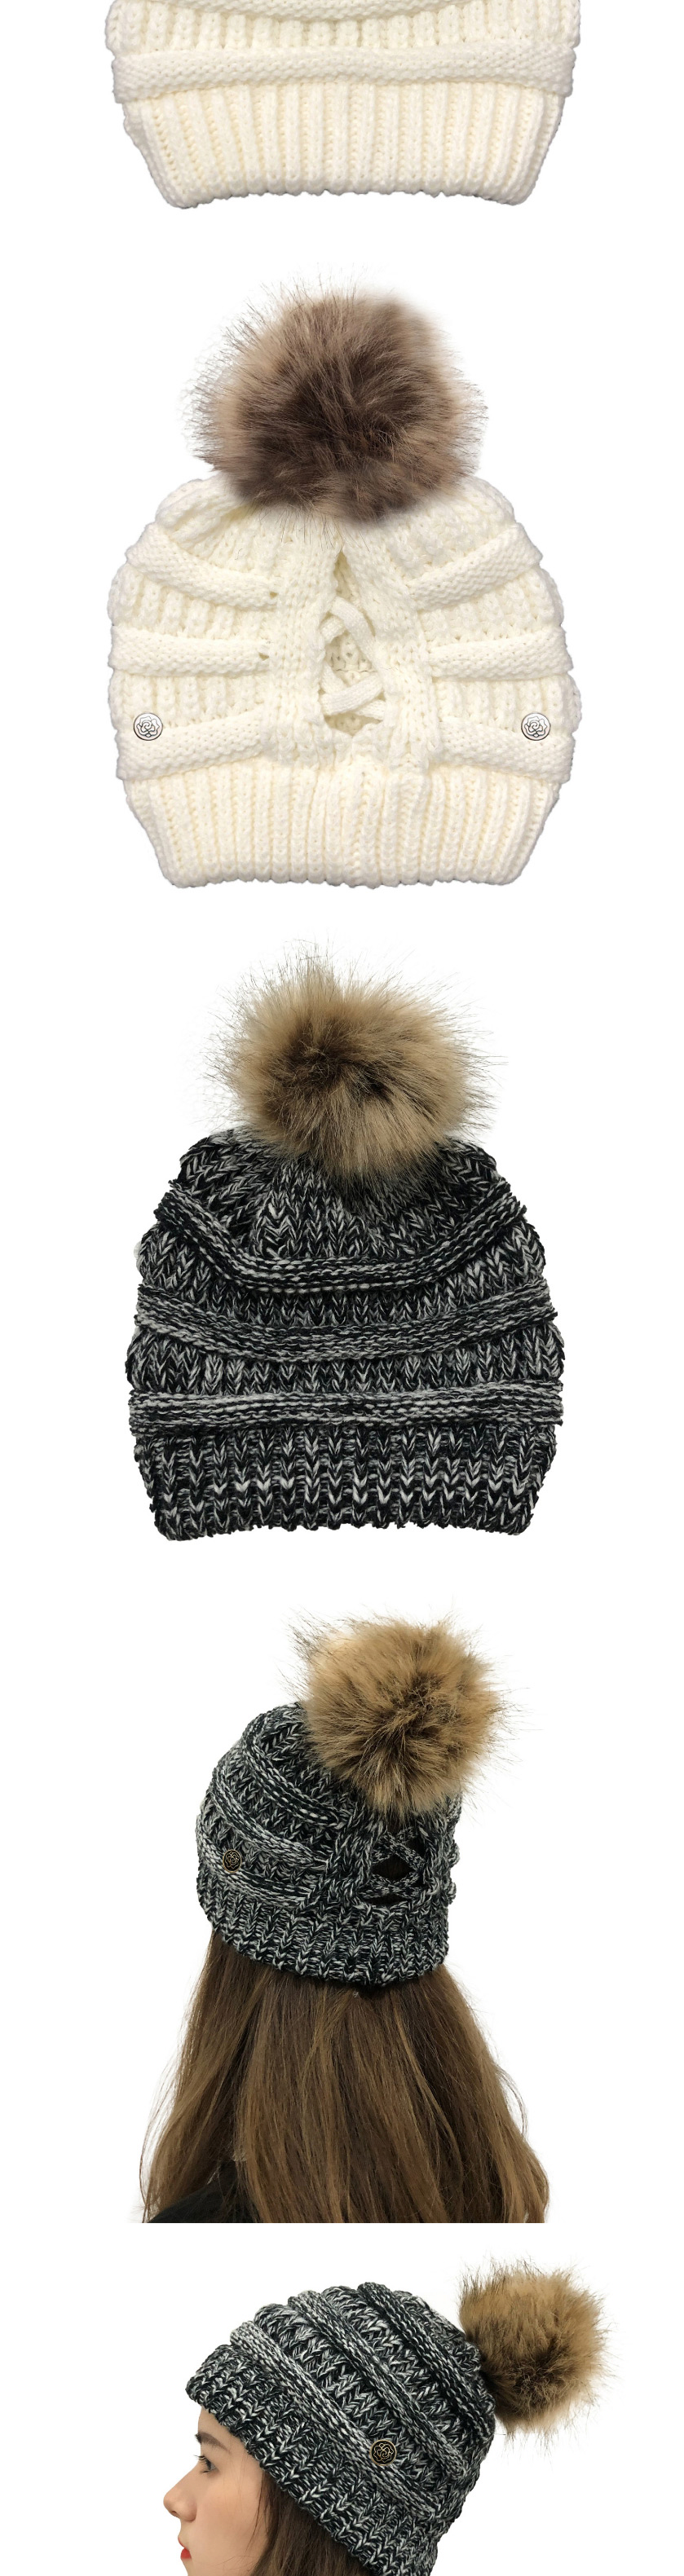 Fashion Black Flowers Button Knitted Cross-belt Woolen Hat,Knitting Wool Hats